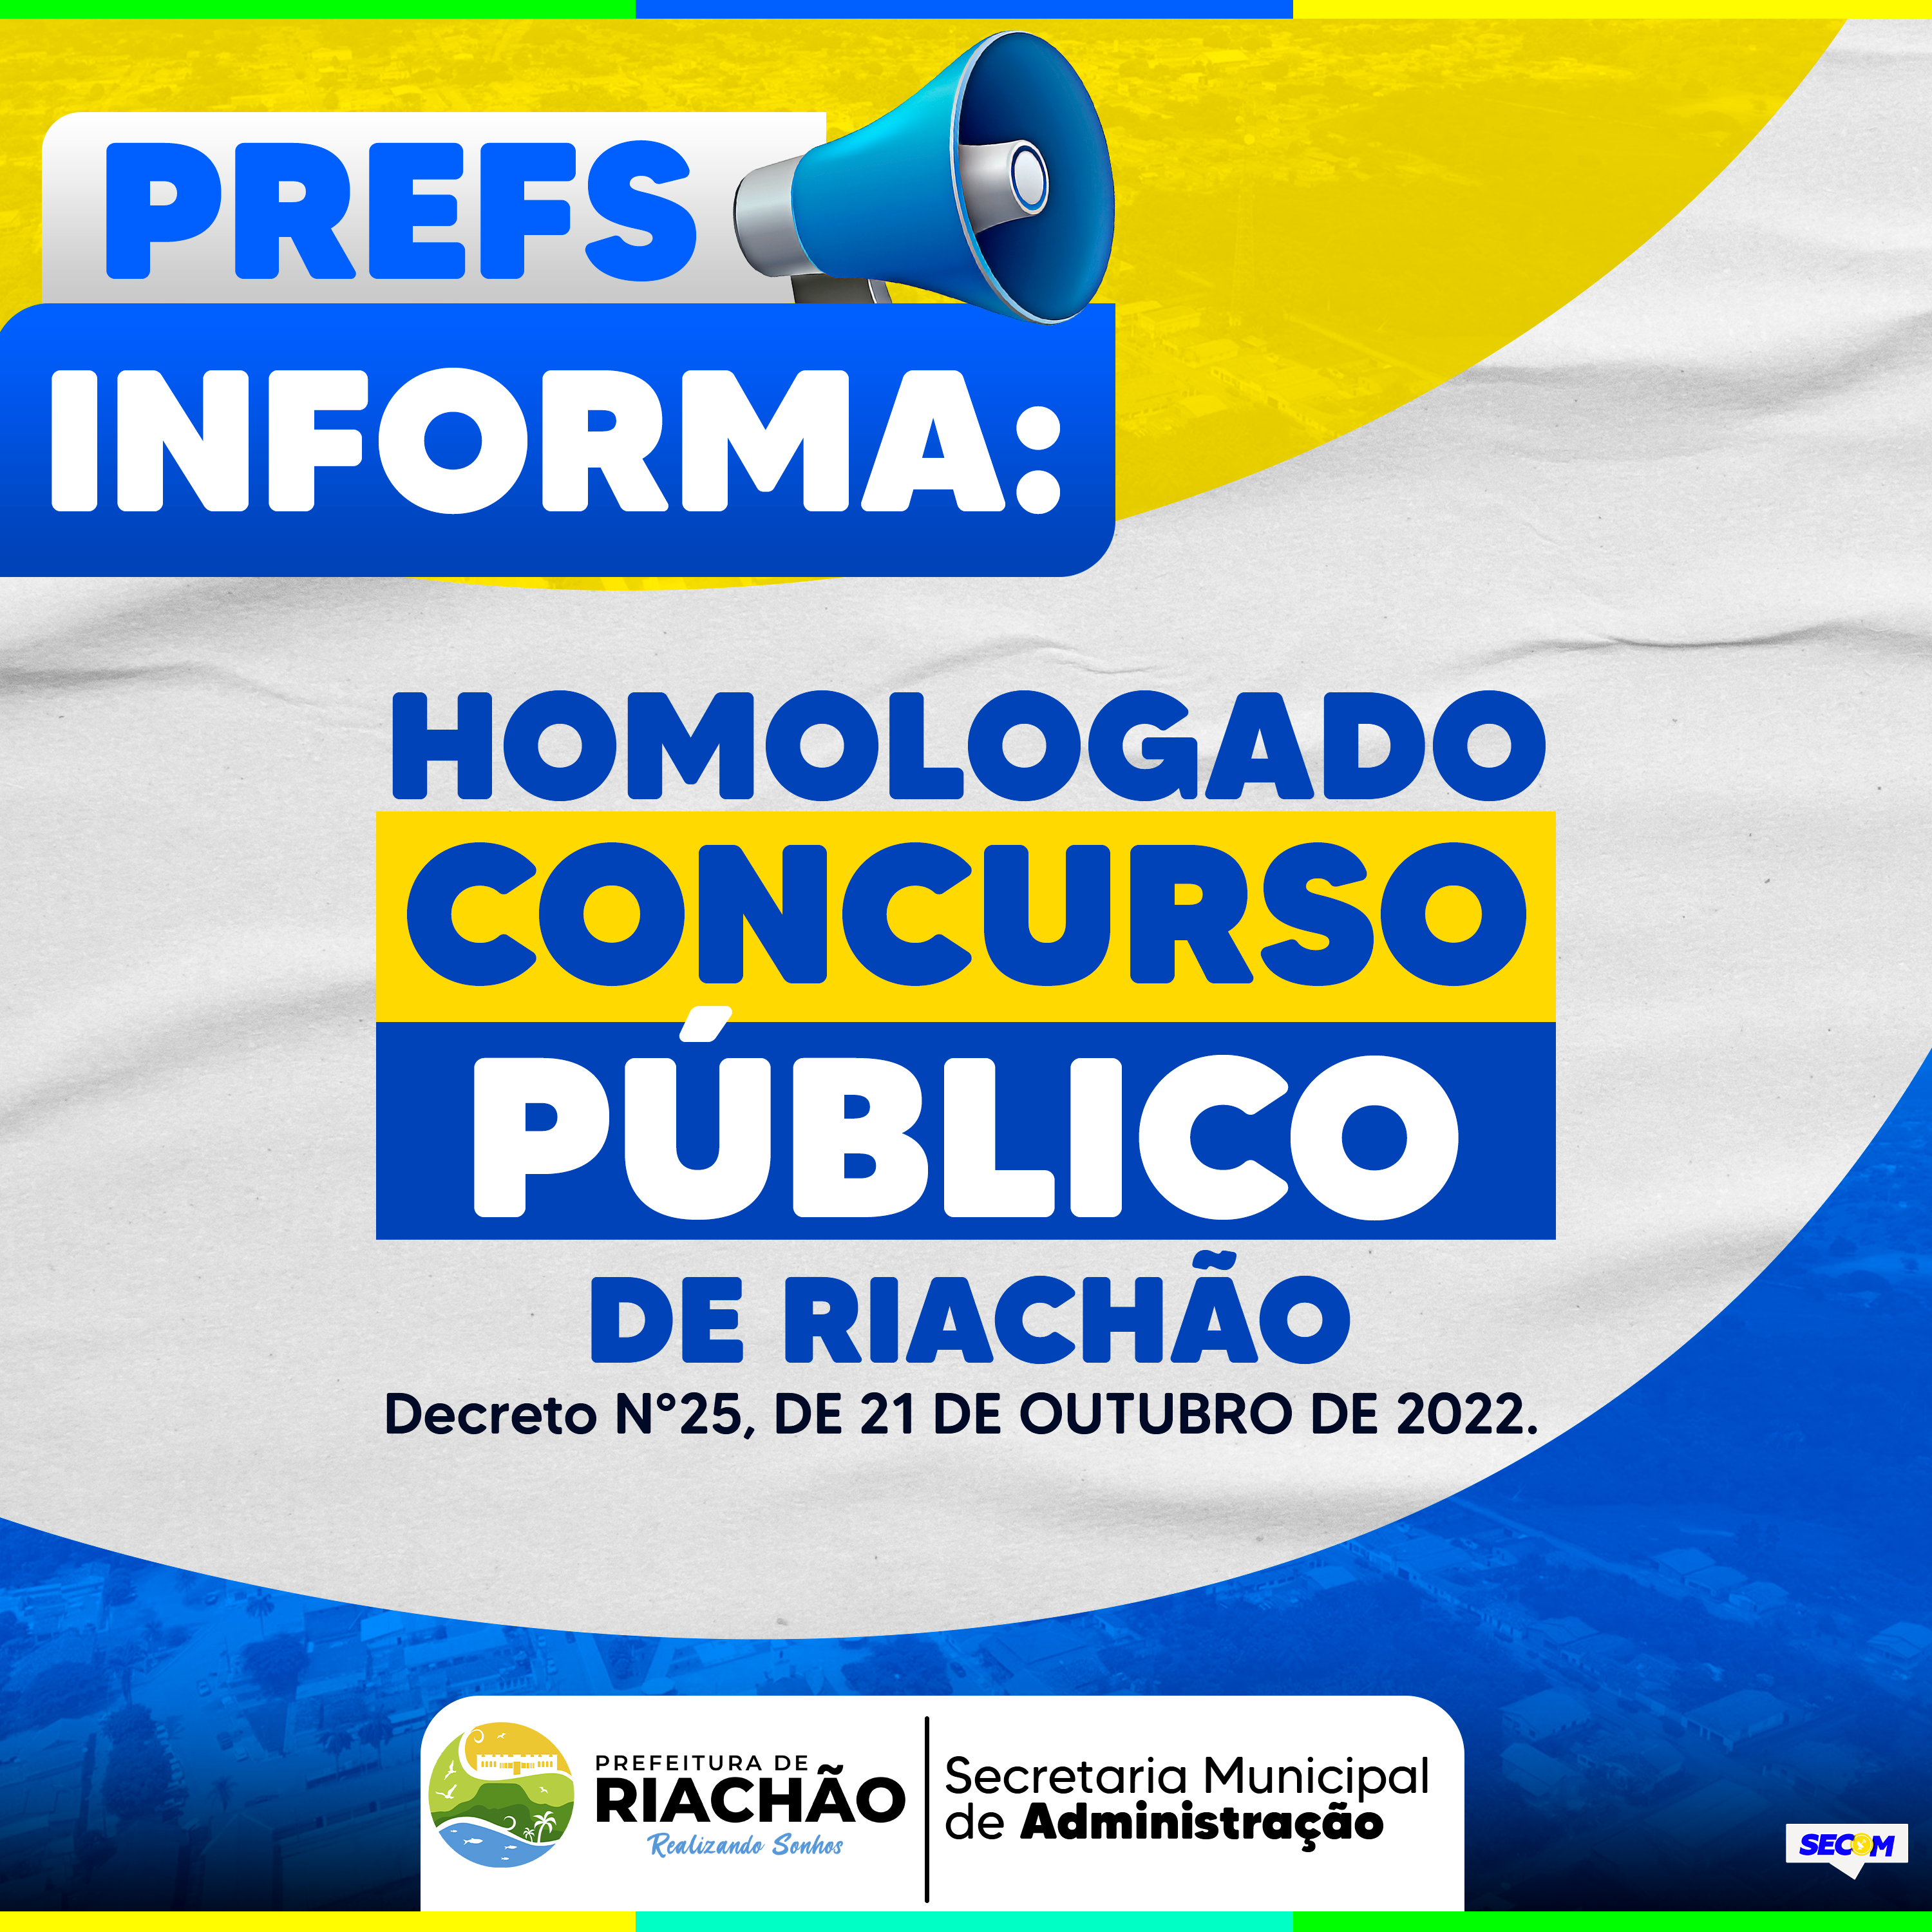 HOMOLOGADO CONCURSO PÚBLICO DE RIACHÃO